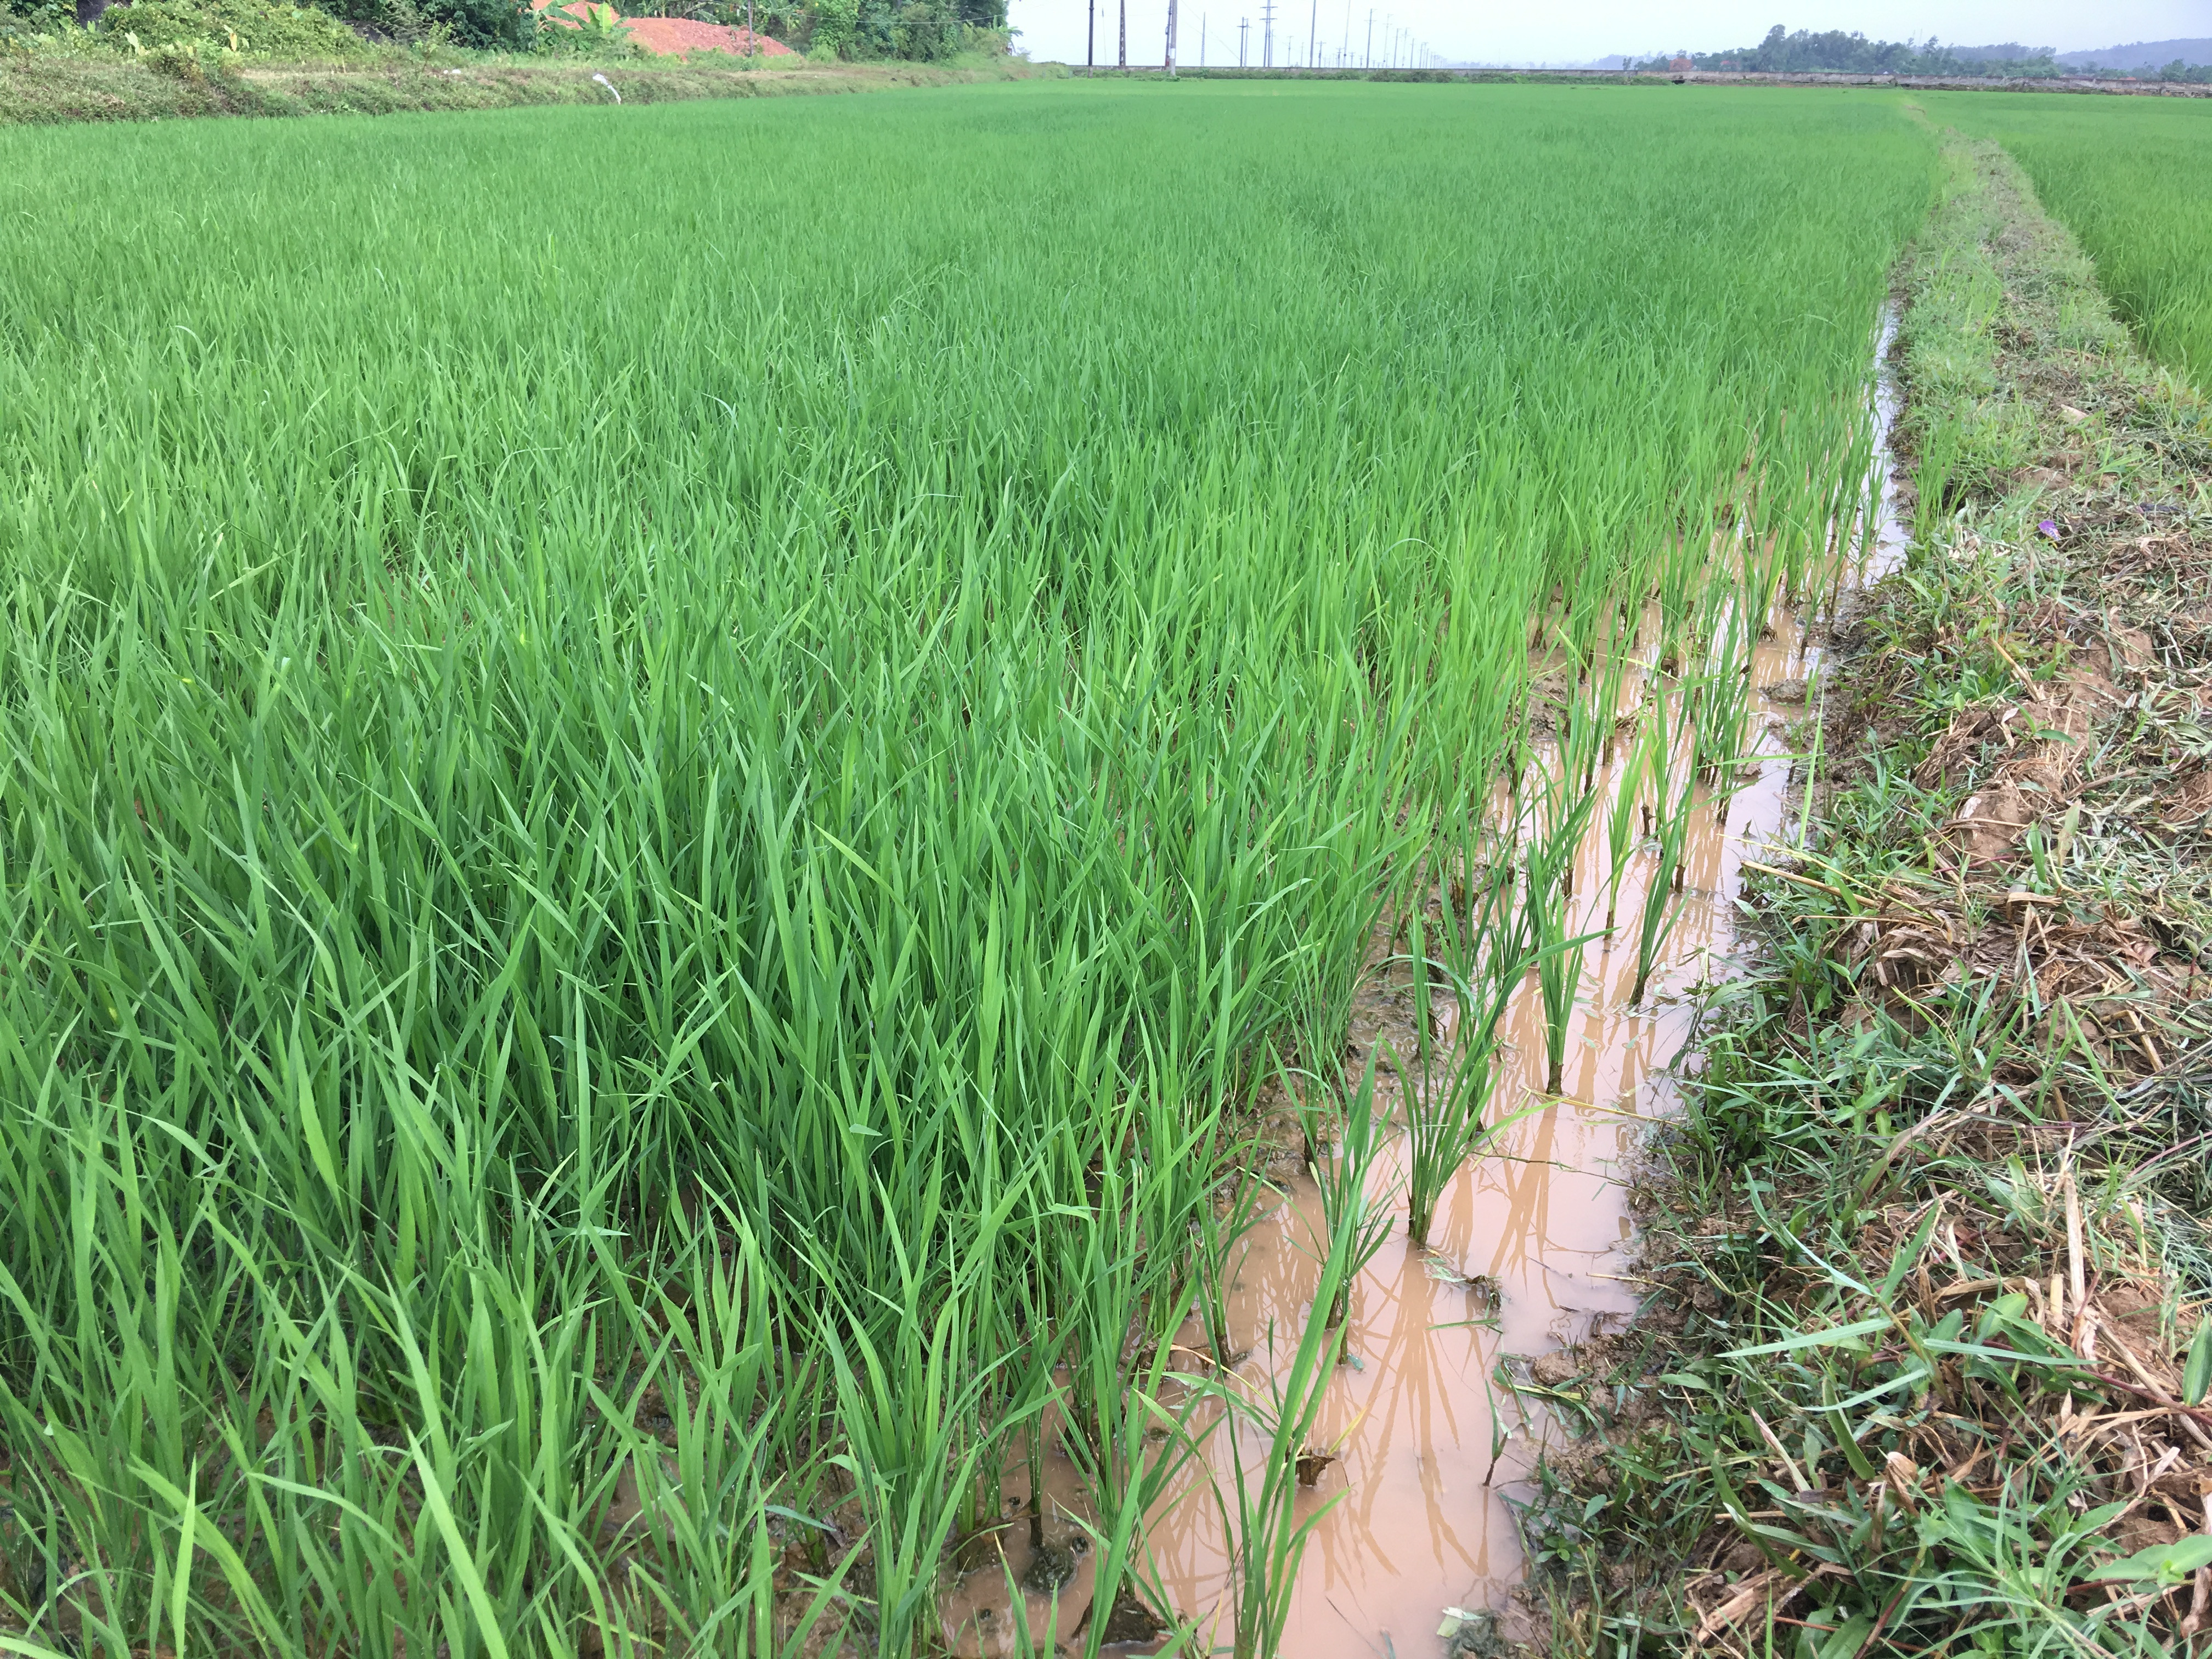 Trận mưa đã bổ sung thêm nước cho cây lúa hè thu sau gần 1 tháng nắng hạn. Ảnh Ngọc Phương